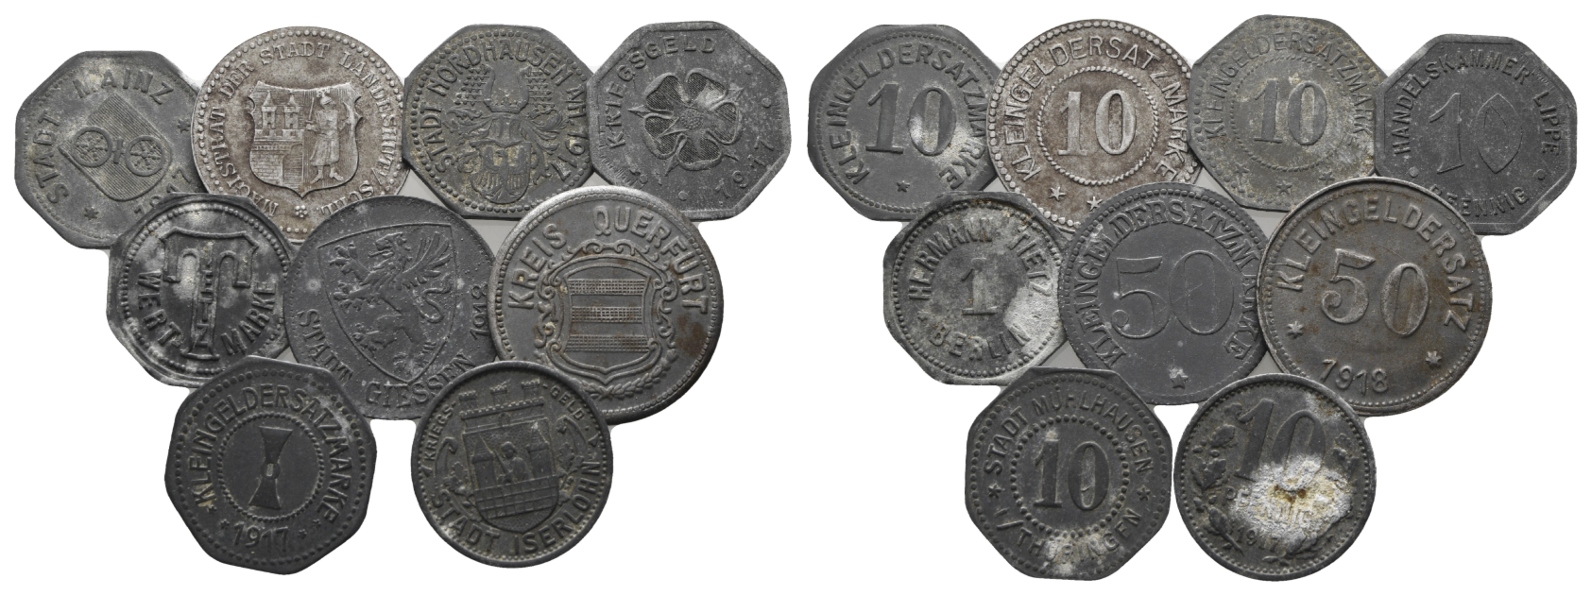  Notgeld diverser Städte, 9 Kleinmünzen   